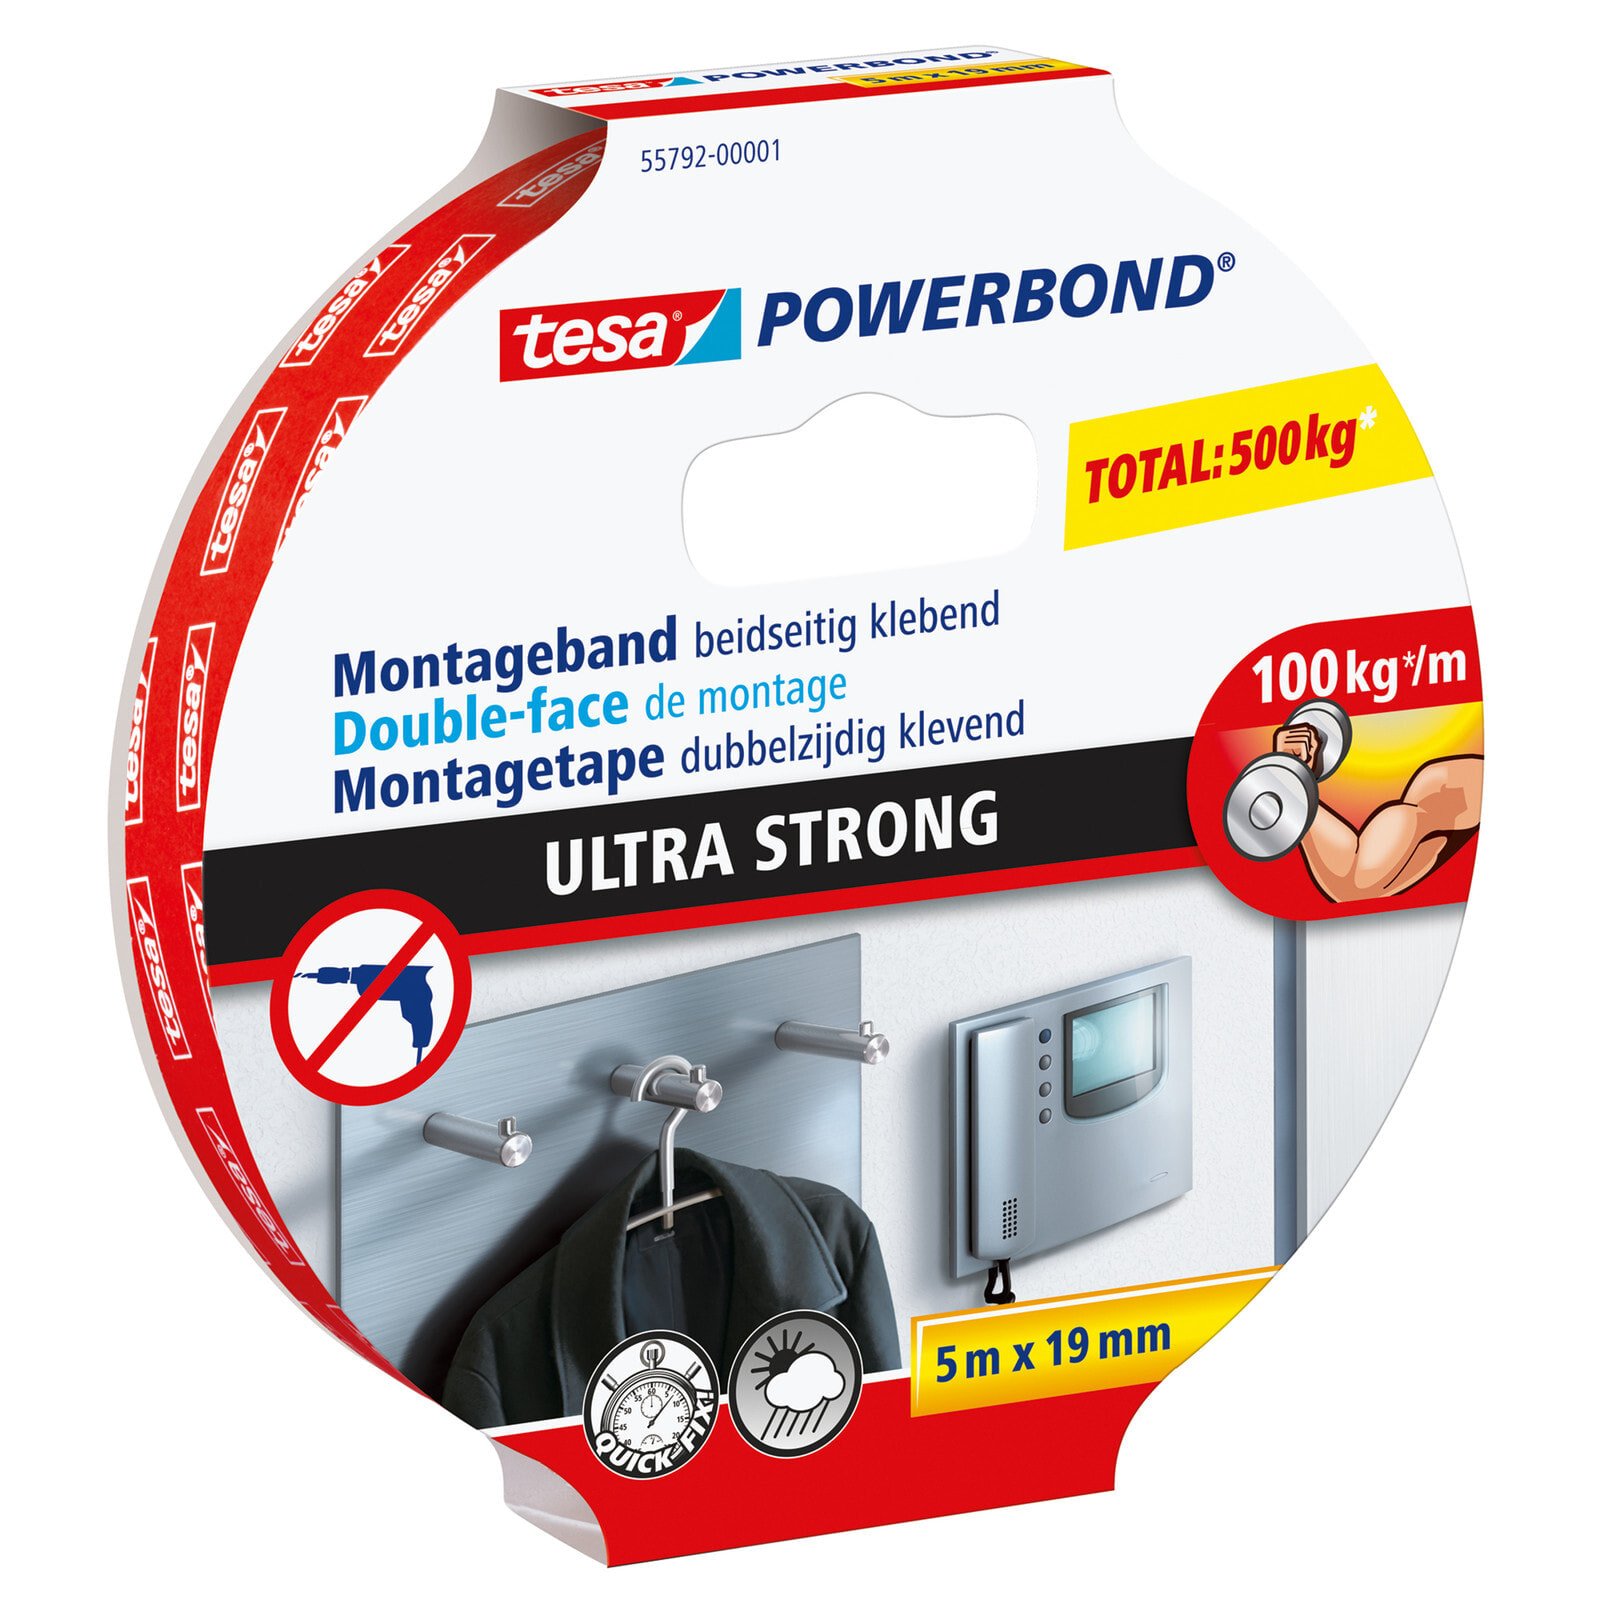 TESA Powerbond Ultra Strong Монтажная лента 5 m 55792-00001